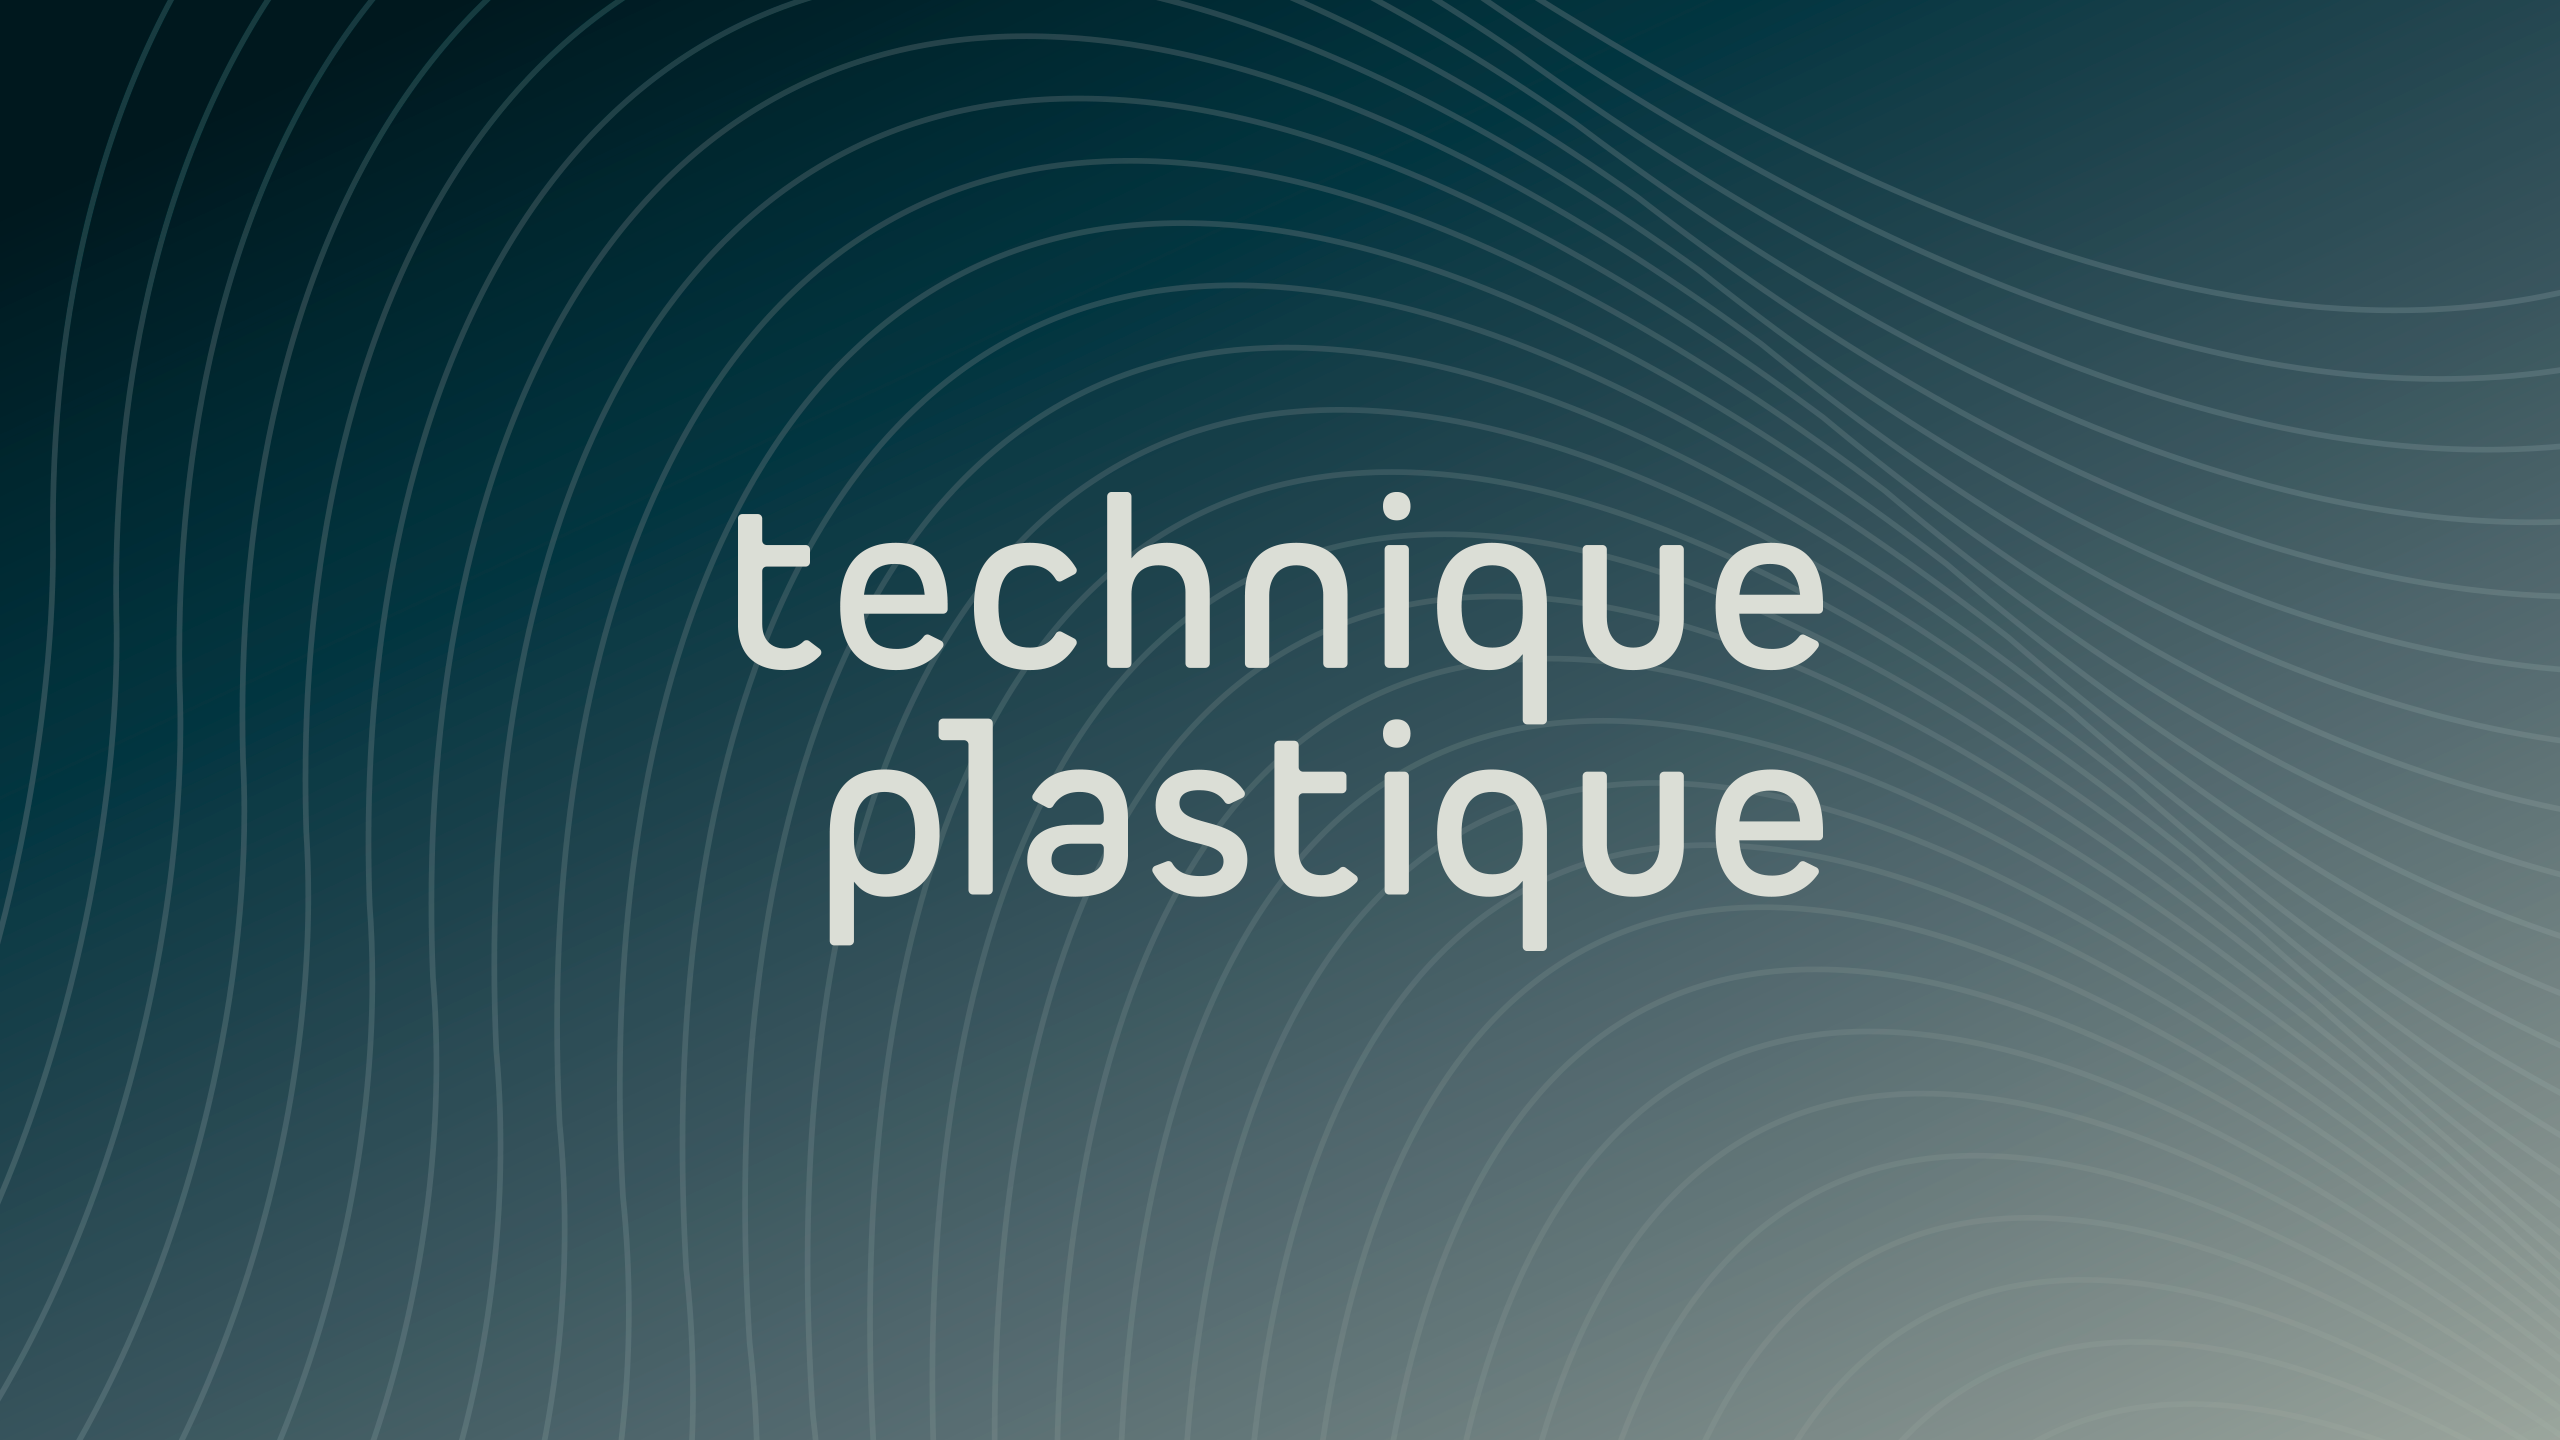 Technique Plastique